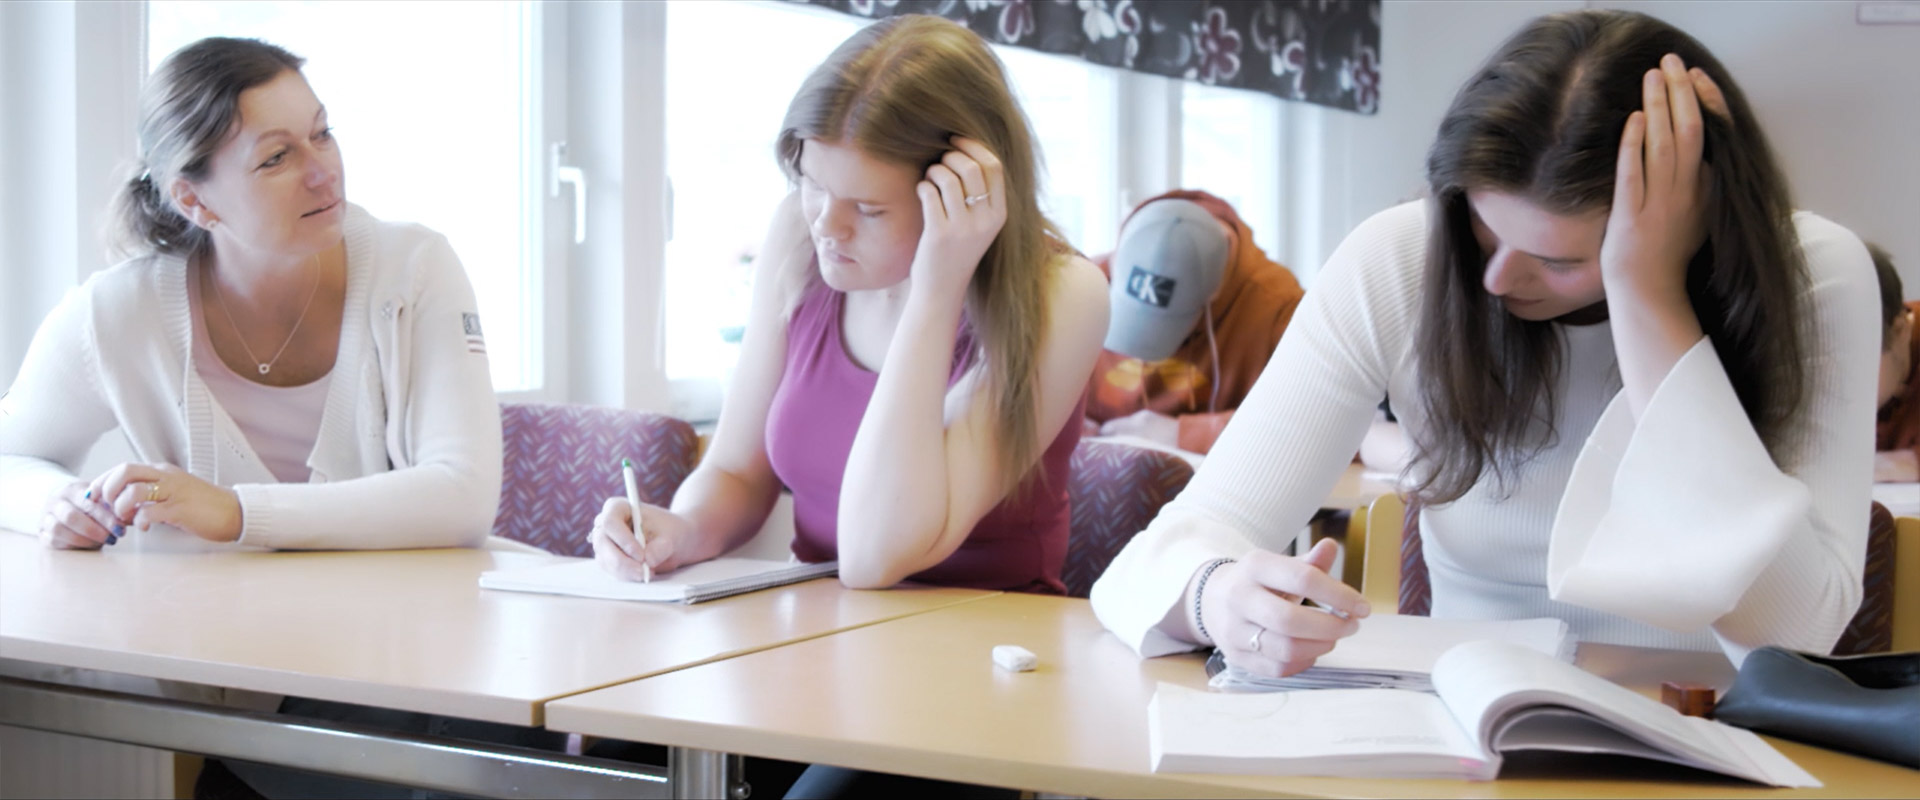 Elevassistentutbildning. Bild på elevassistent med två deltagare som skriver.